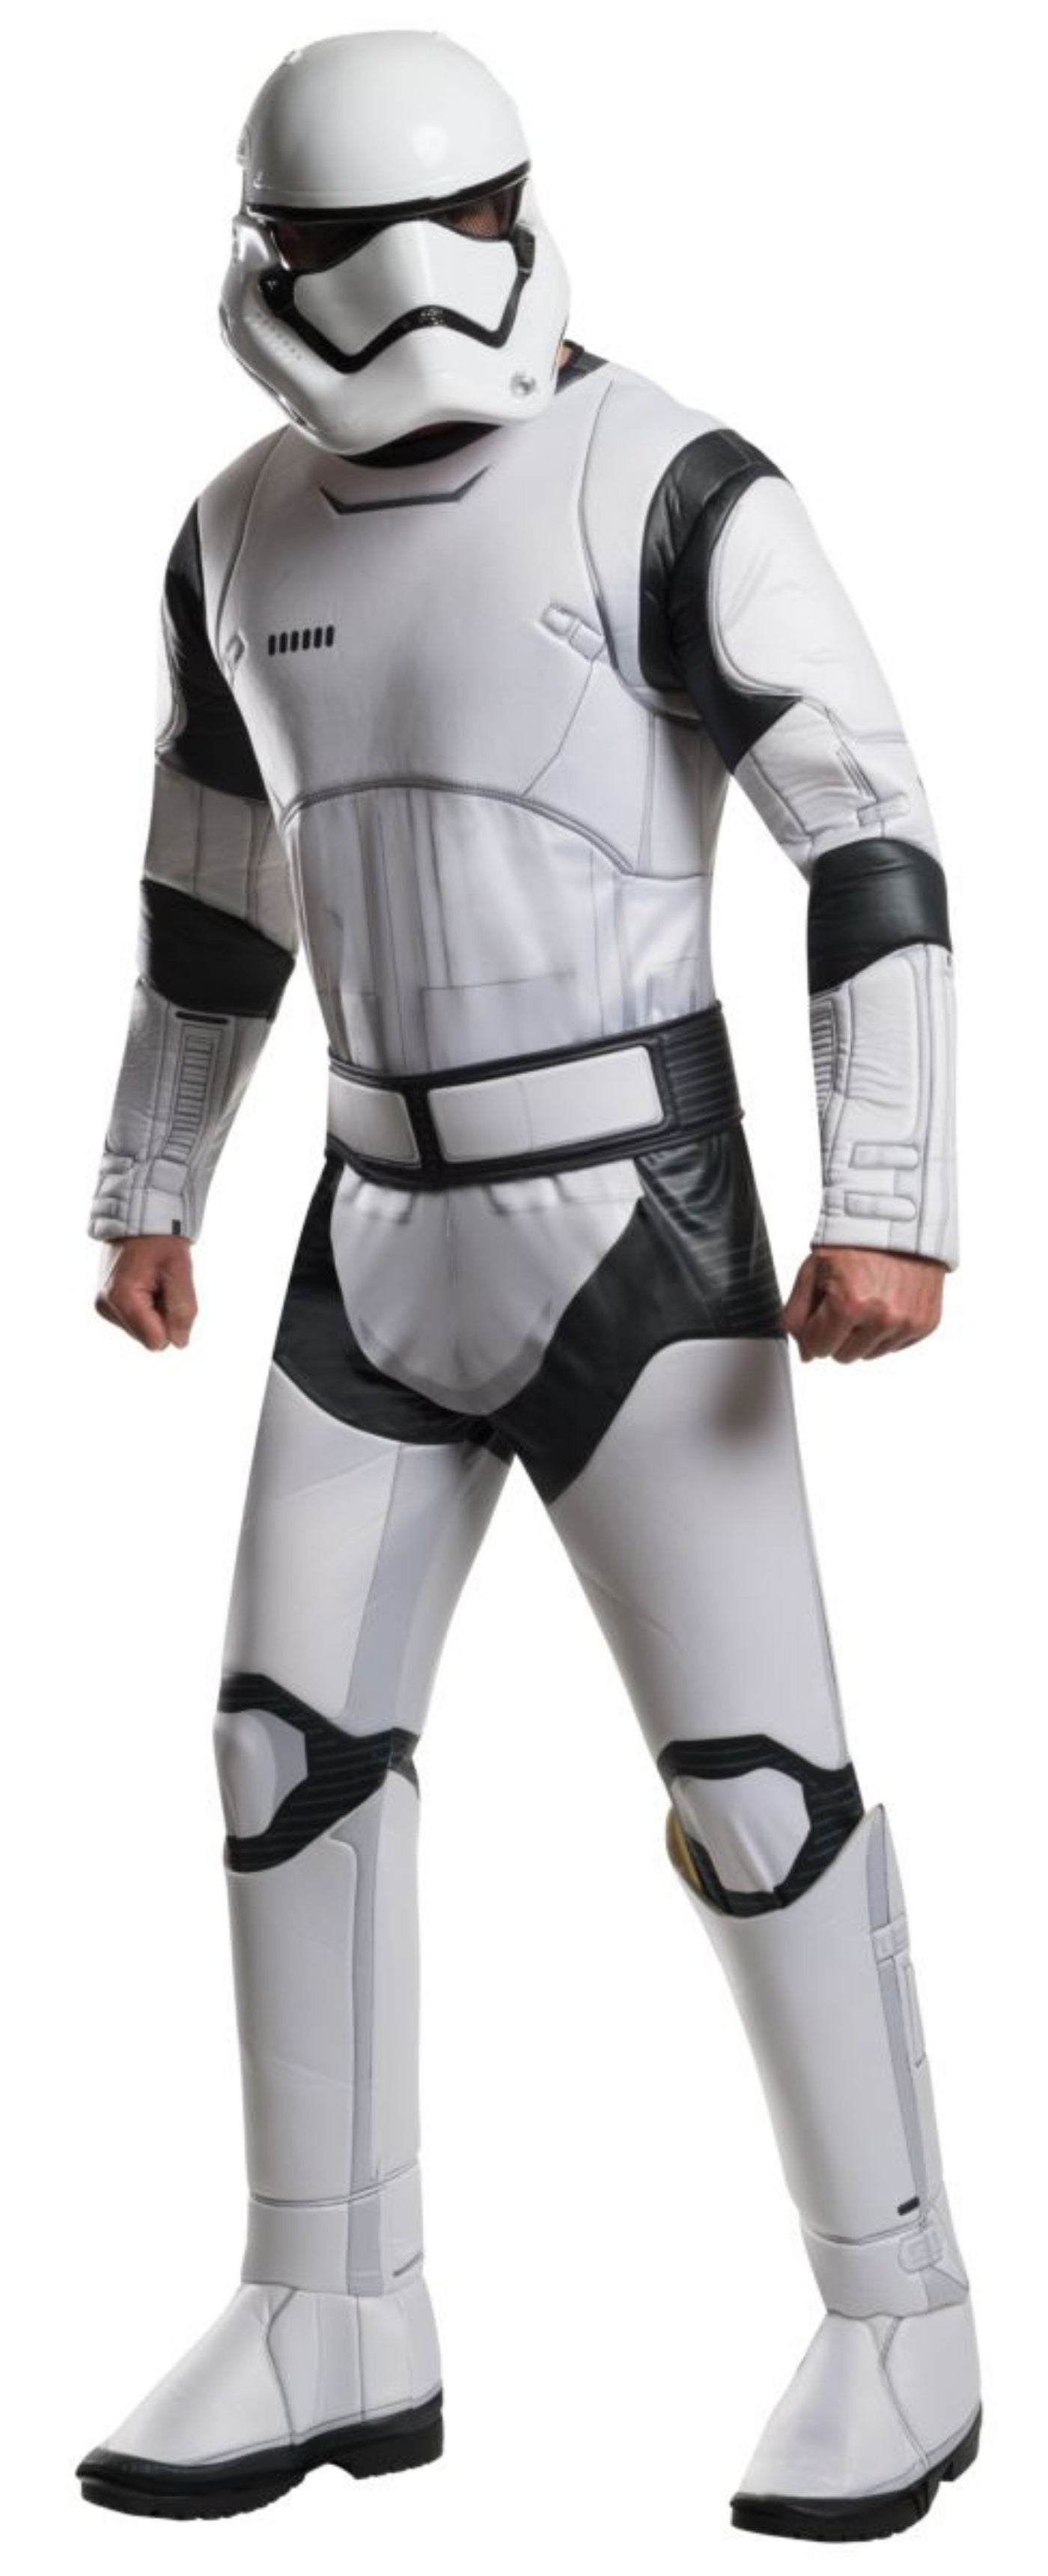 Force Awakens Deluxe Adult Stormtrooper